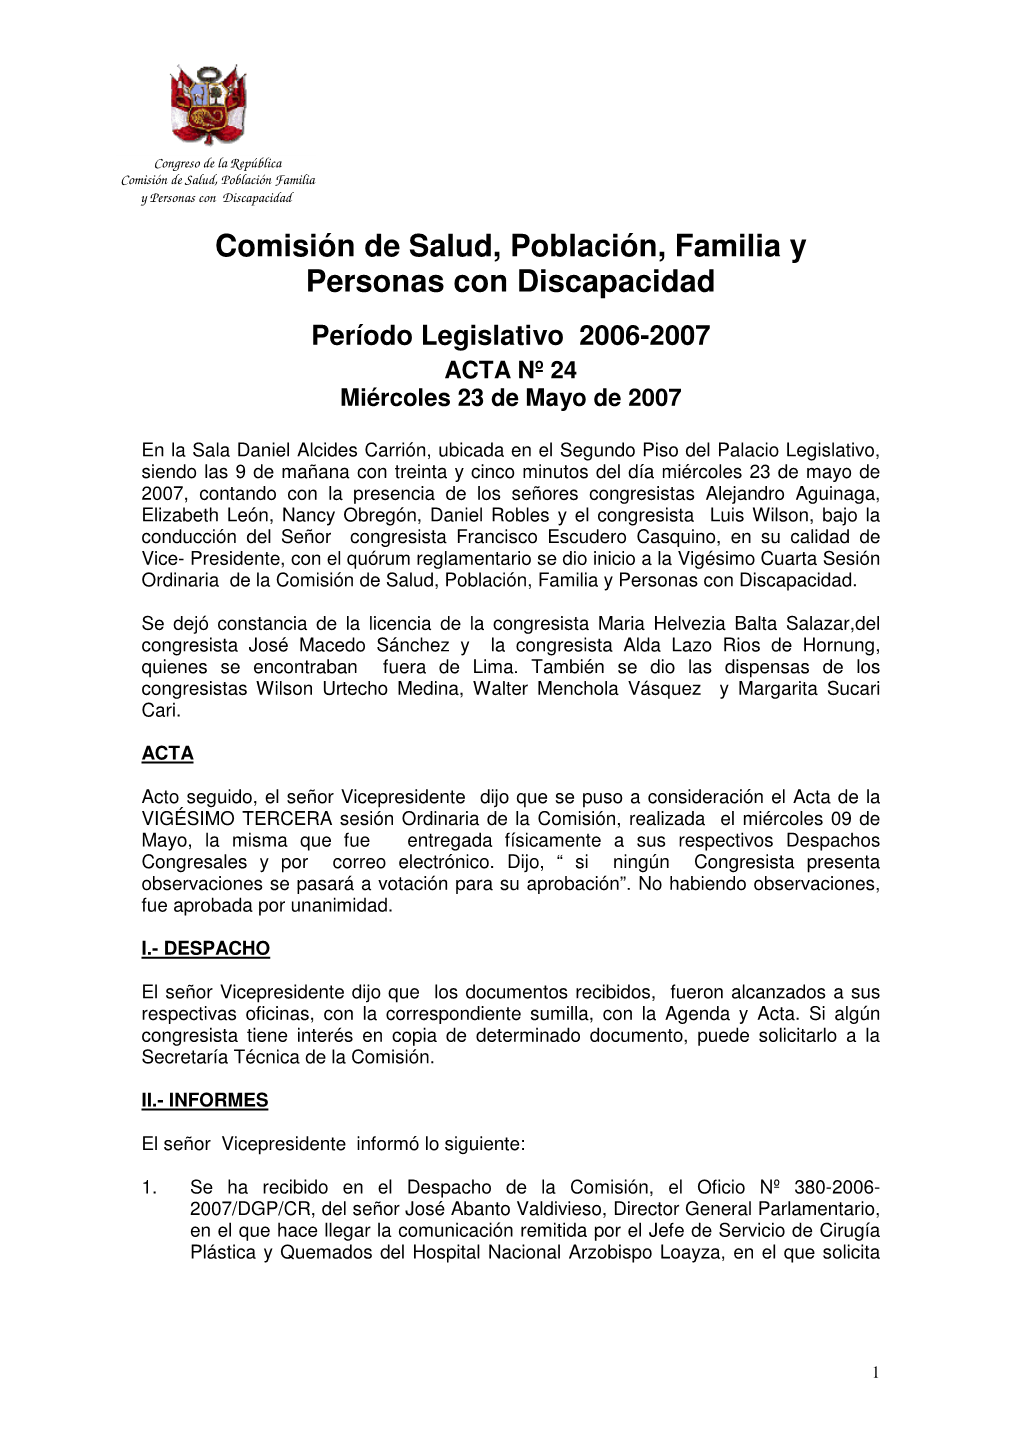 Comisión De Salud, Población, Familia Y Personas Con Discapacidad Período Legislativo 2006-2007 ACTA Nº 24 Miércoles 23 De Mayo De 2007